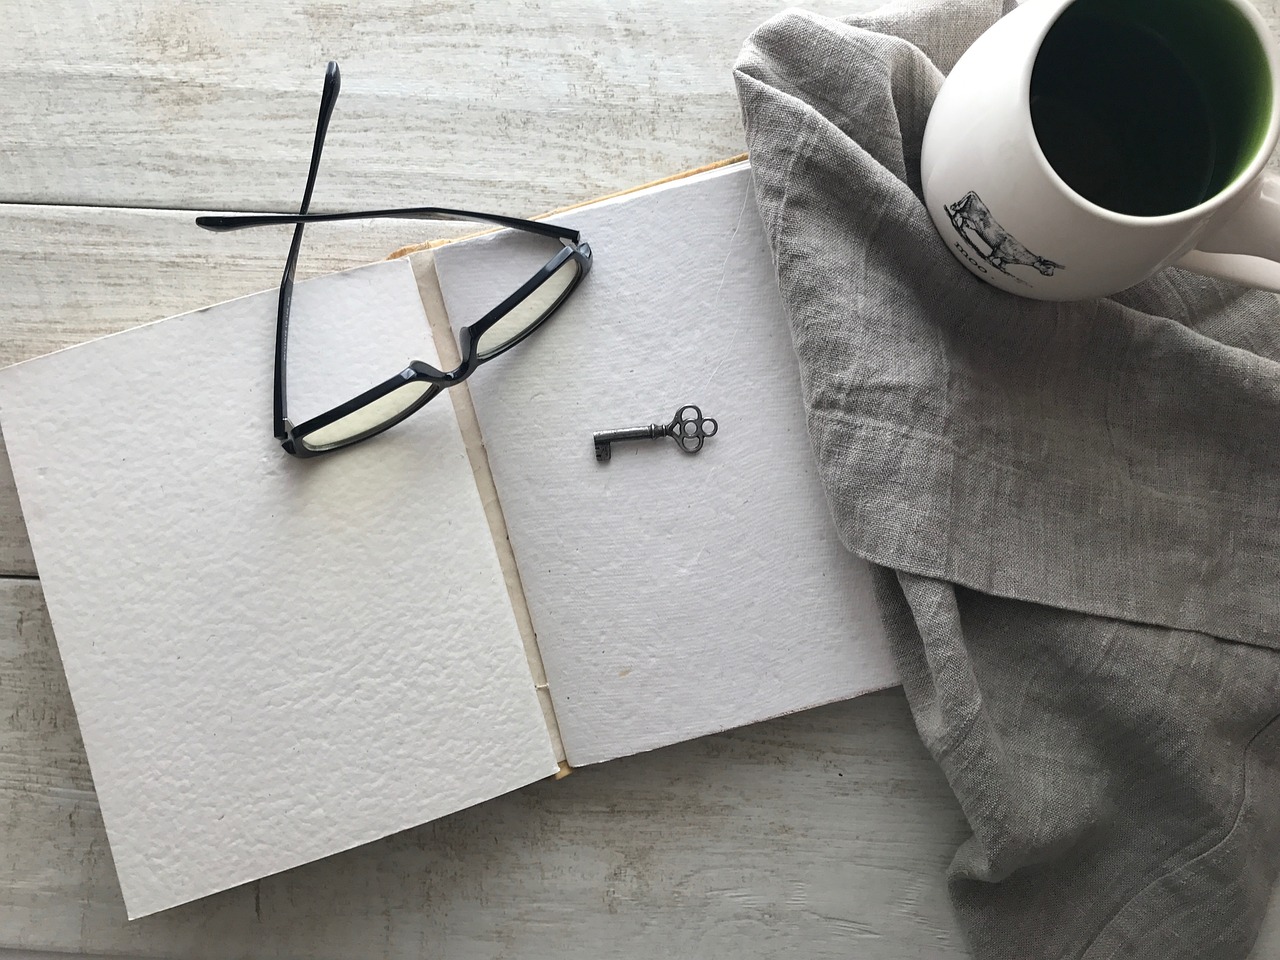 A decisão de se tornar um autor - um caderno aberto mostrando páginas em branco, um óculos sobre as páginas, xicara de café ao lado, imagem de Deborah Hudson, via pixabay.com